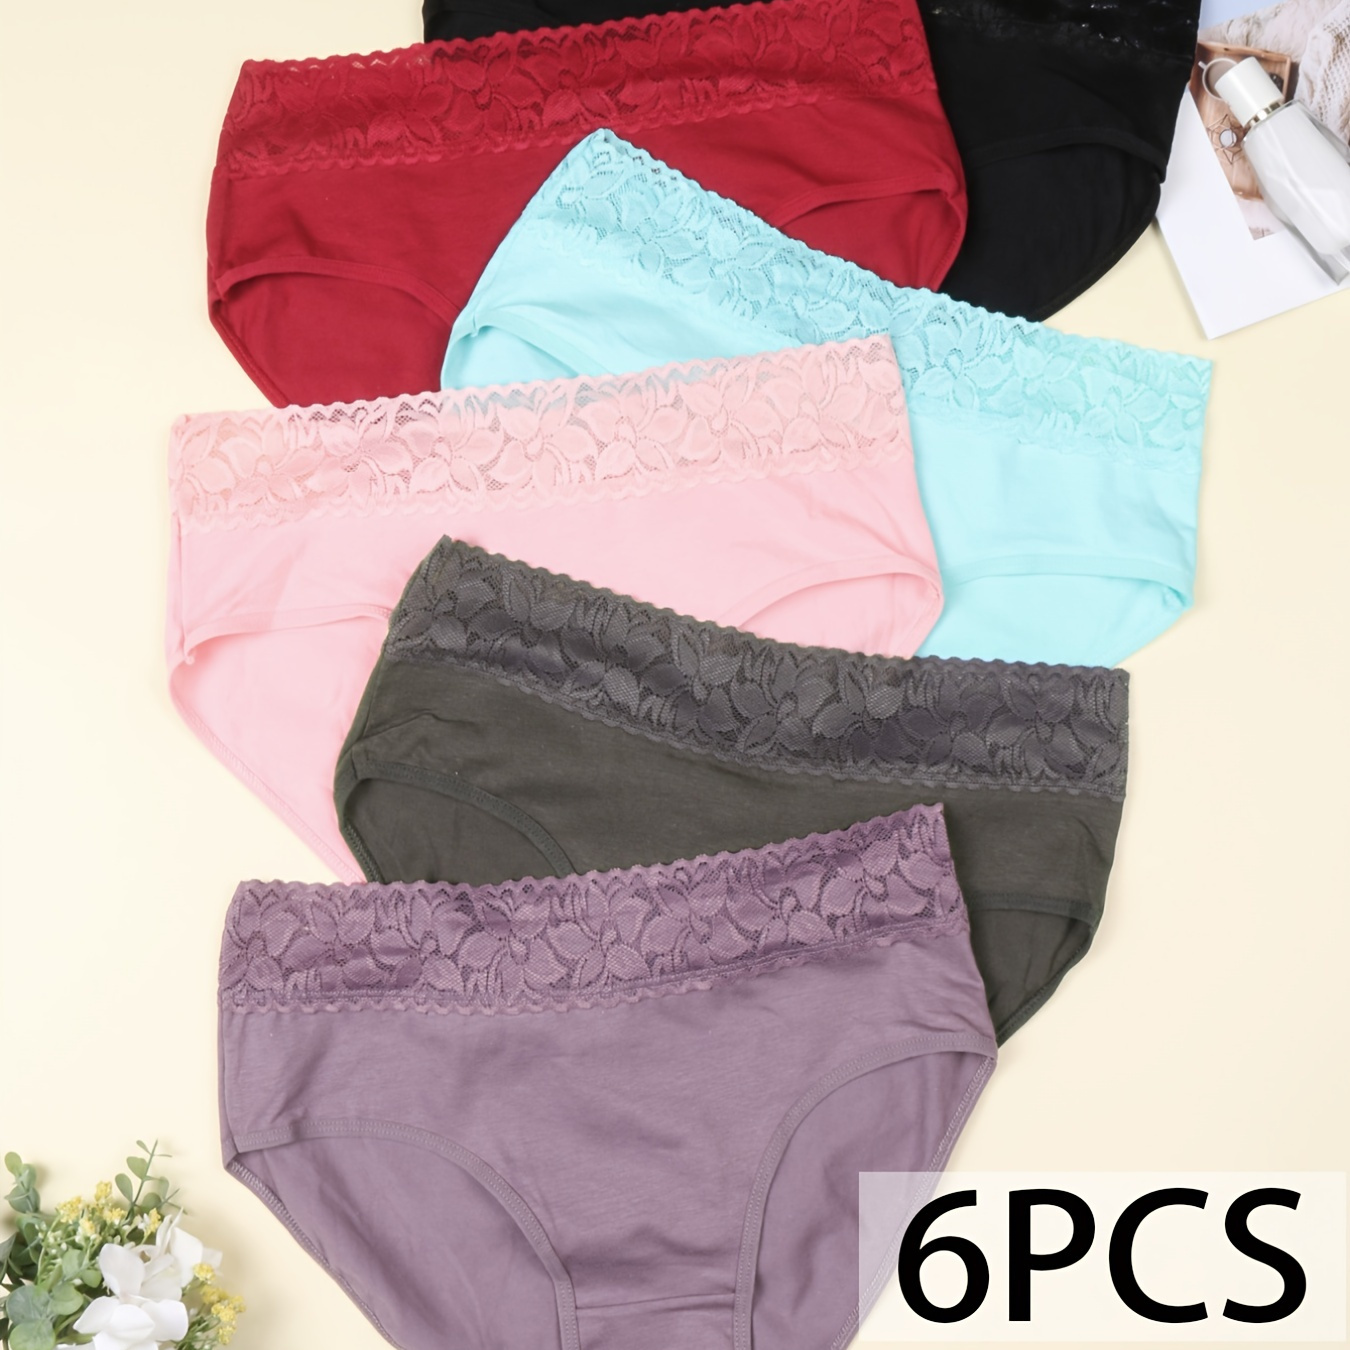 

Lace Trim Bikini Briefs, Breathable Mid-rise Elastic Waist Cotton Panties, Women's Lingerie & Underwear